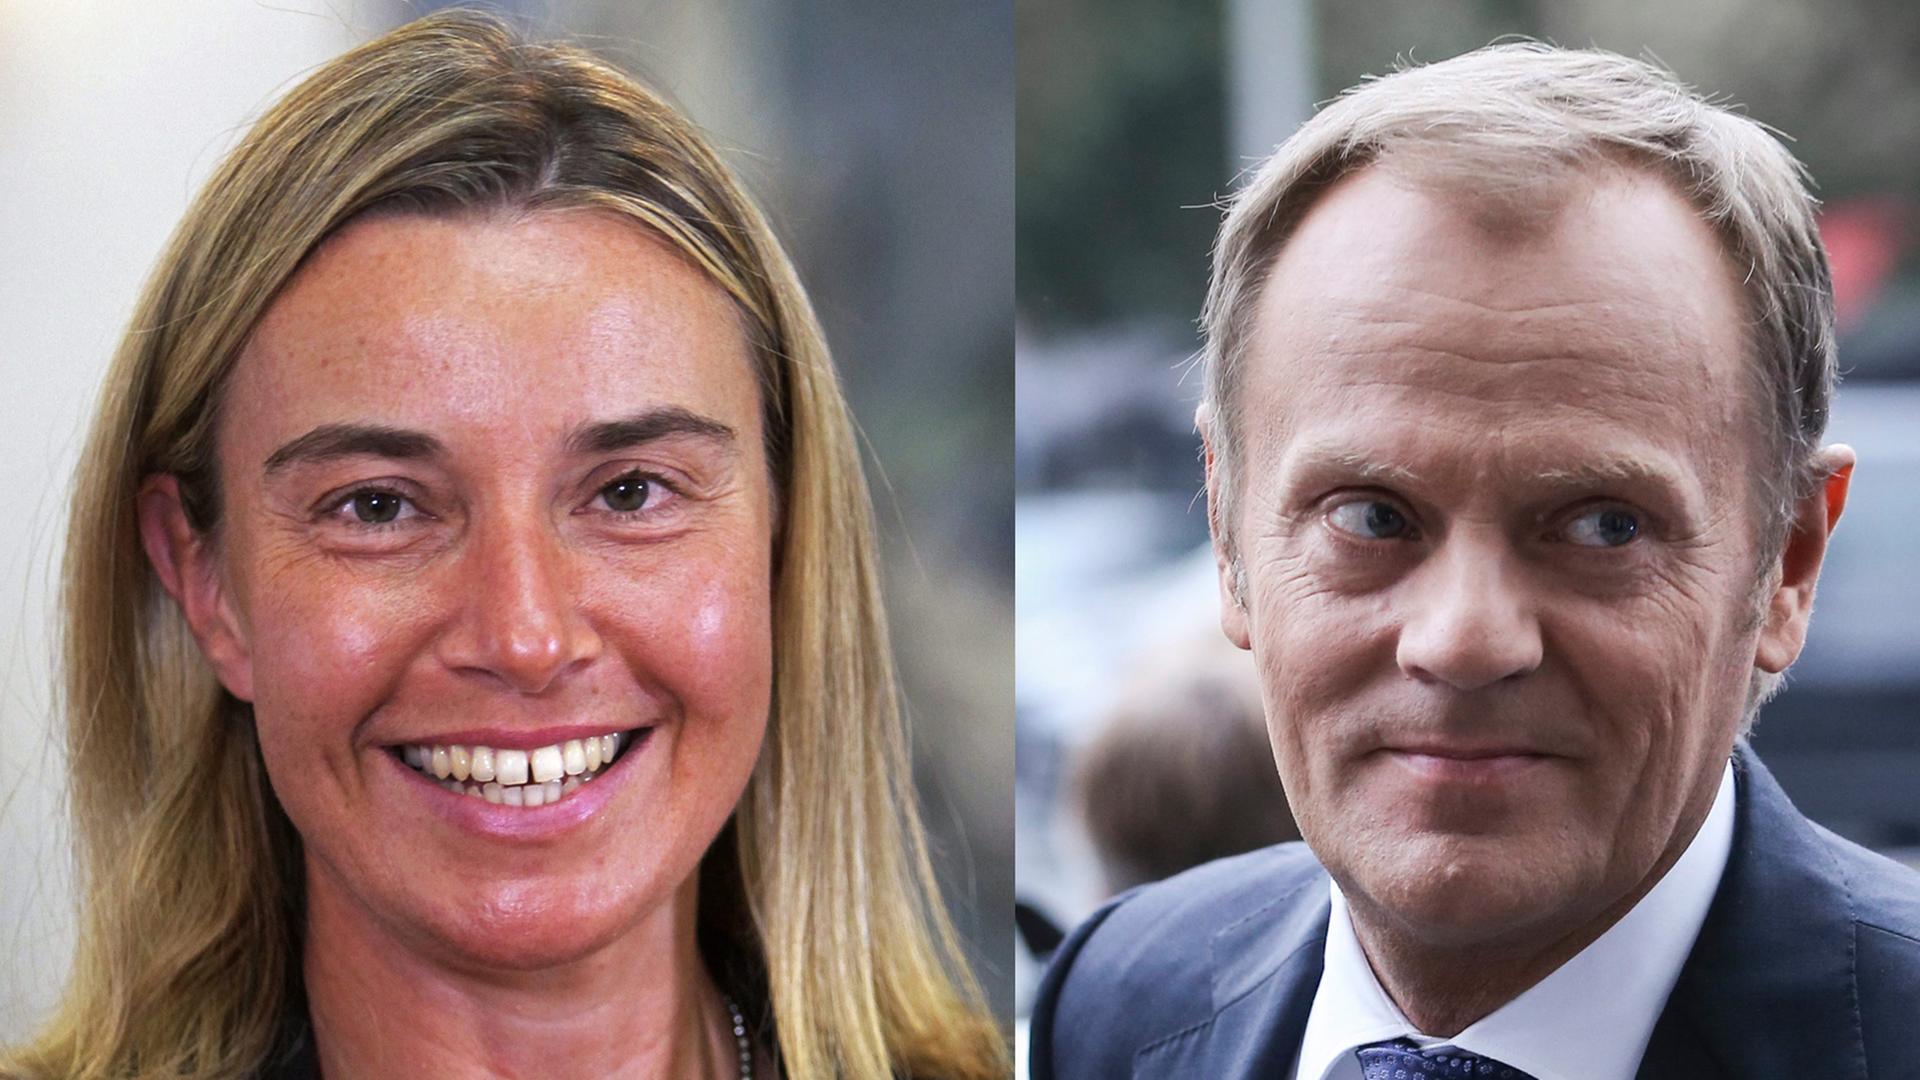 Der Pole Donald Tusk wird neuer EU-Ratspräsident und die Italienerin Federica Mogherini nächste EU-Außenbeauftragte